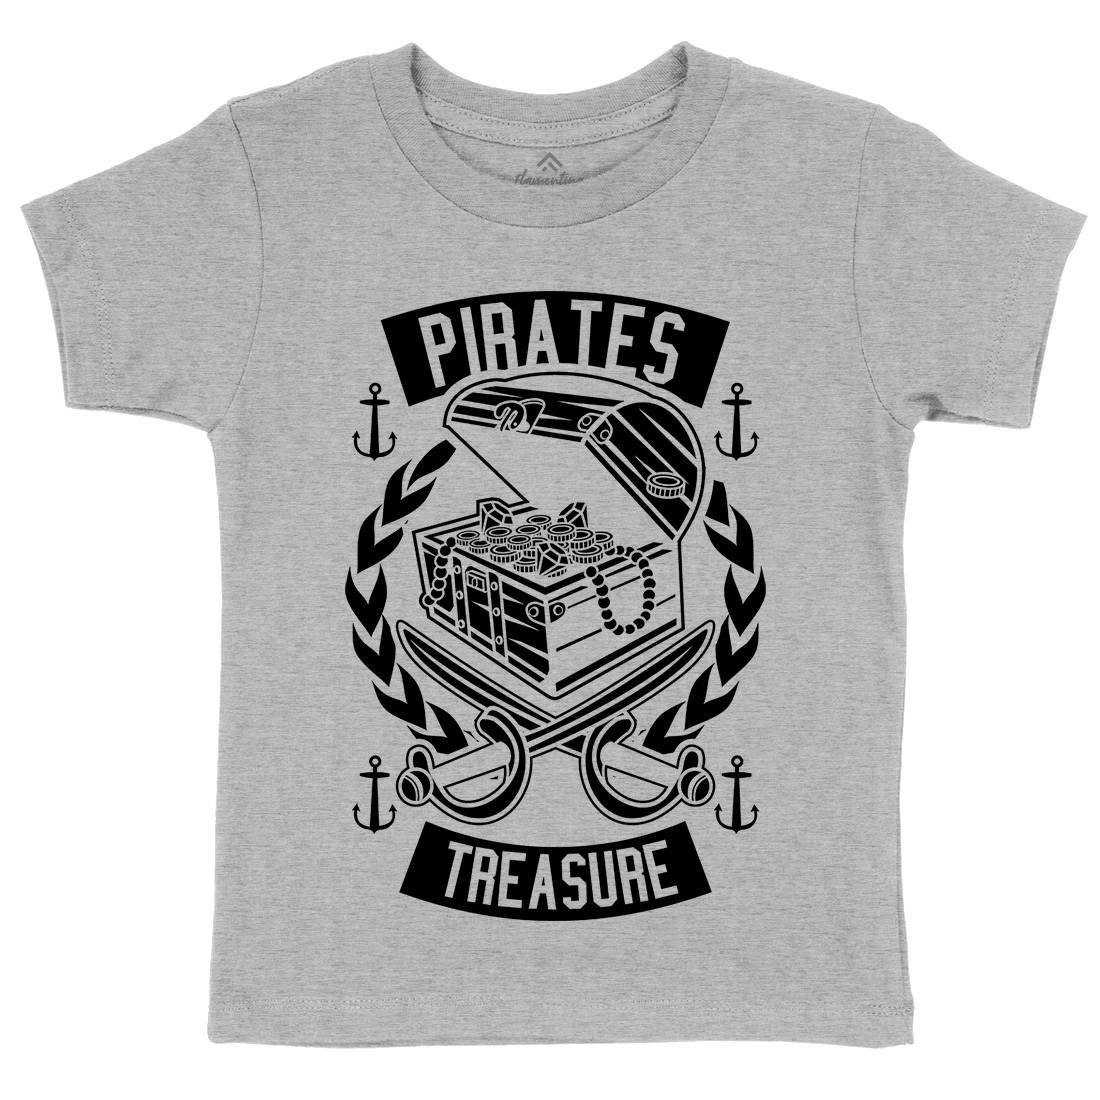 Pirates Treasure Kids Crew Neck T-Shirt Navy B600